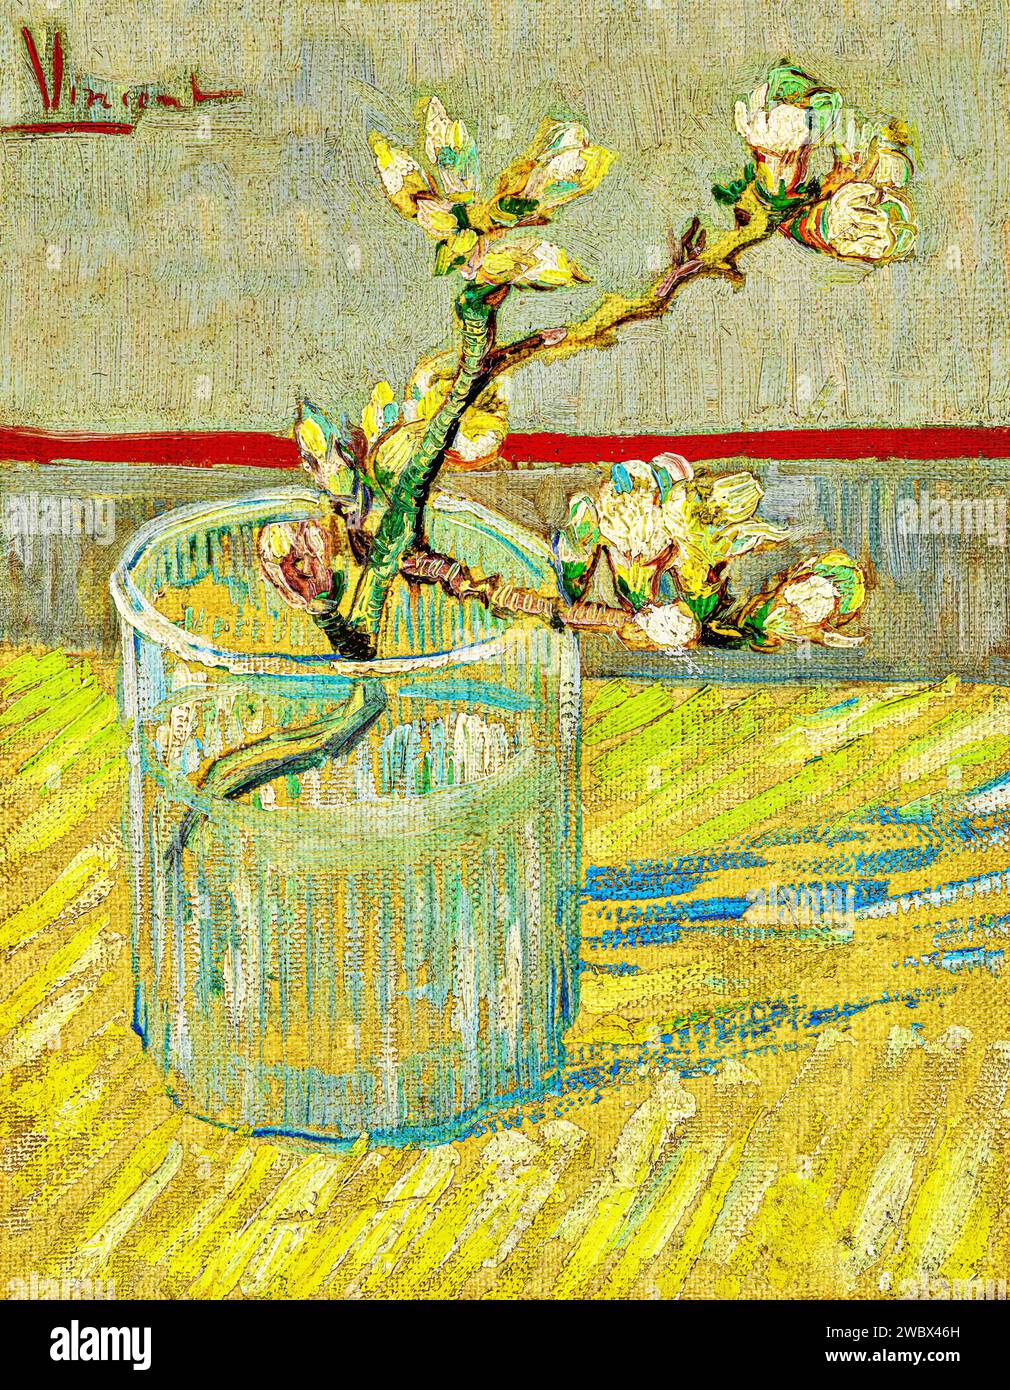 Blossoming Almond Branch in a Glass 1888 (Pittura) dell'artista Gogh, Vincent van (1853-90) Dutc. Illustrazione Vettoriale